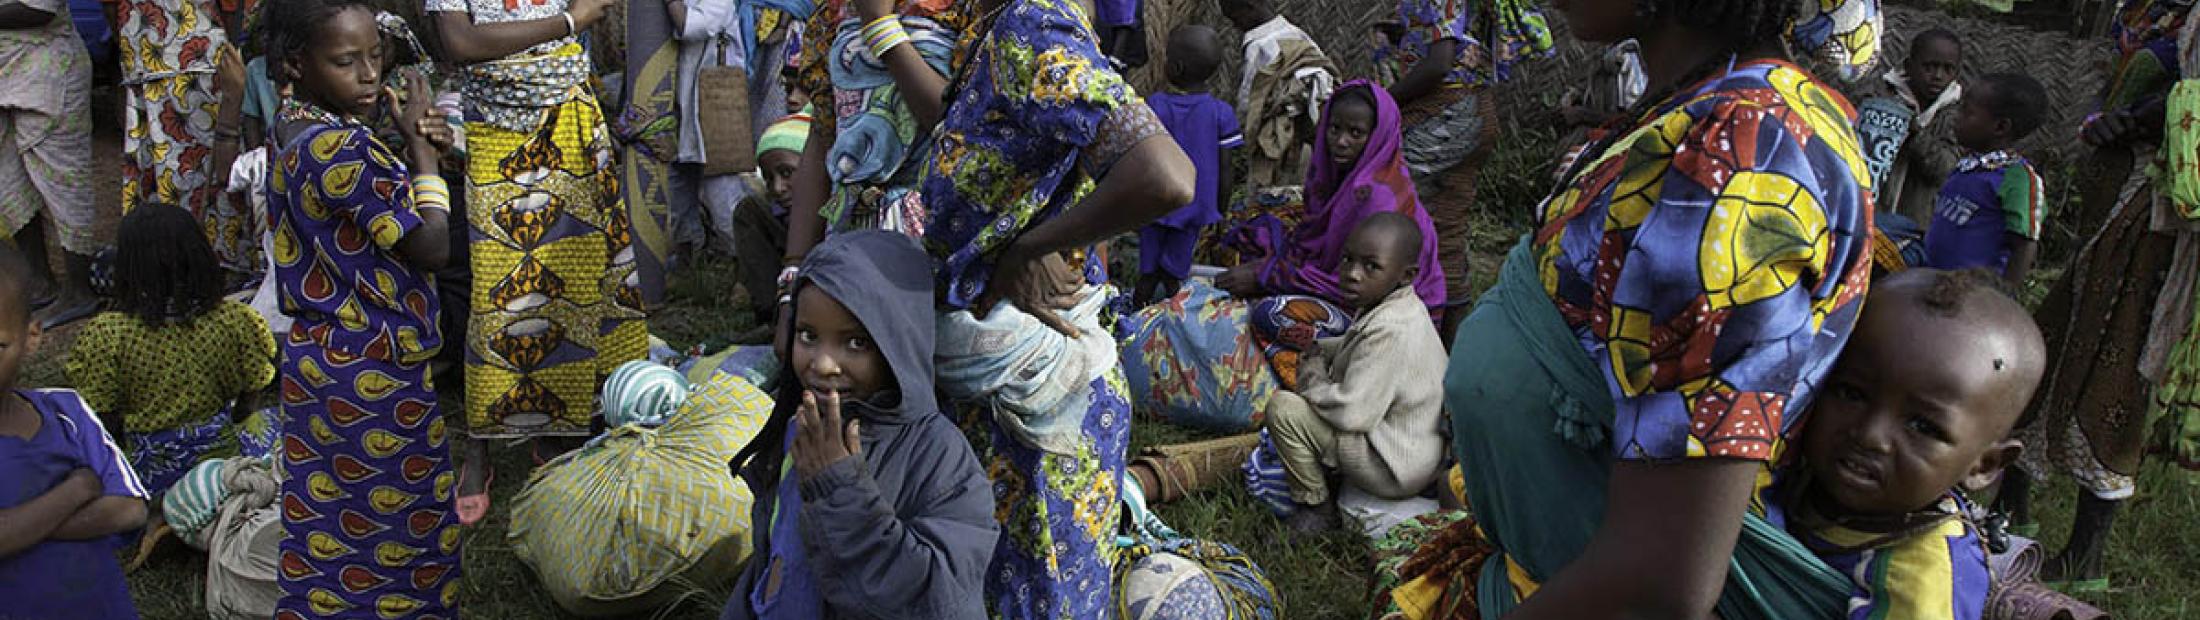 ACNUR constata saqueos y aldeas vacías en Bambari, República Centroafricana